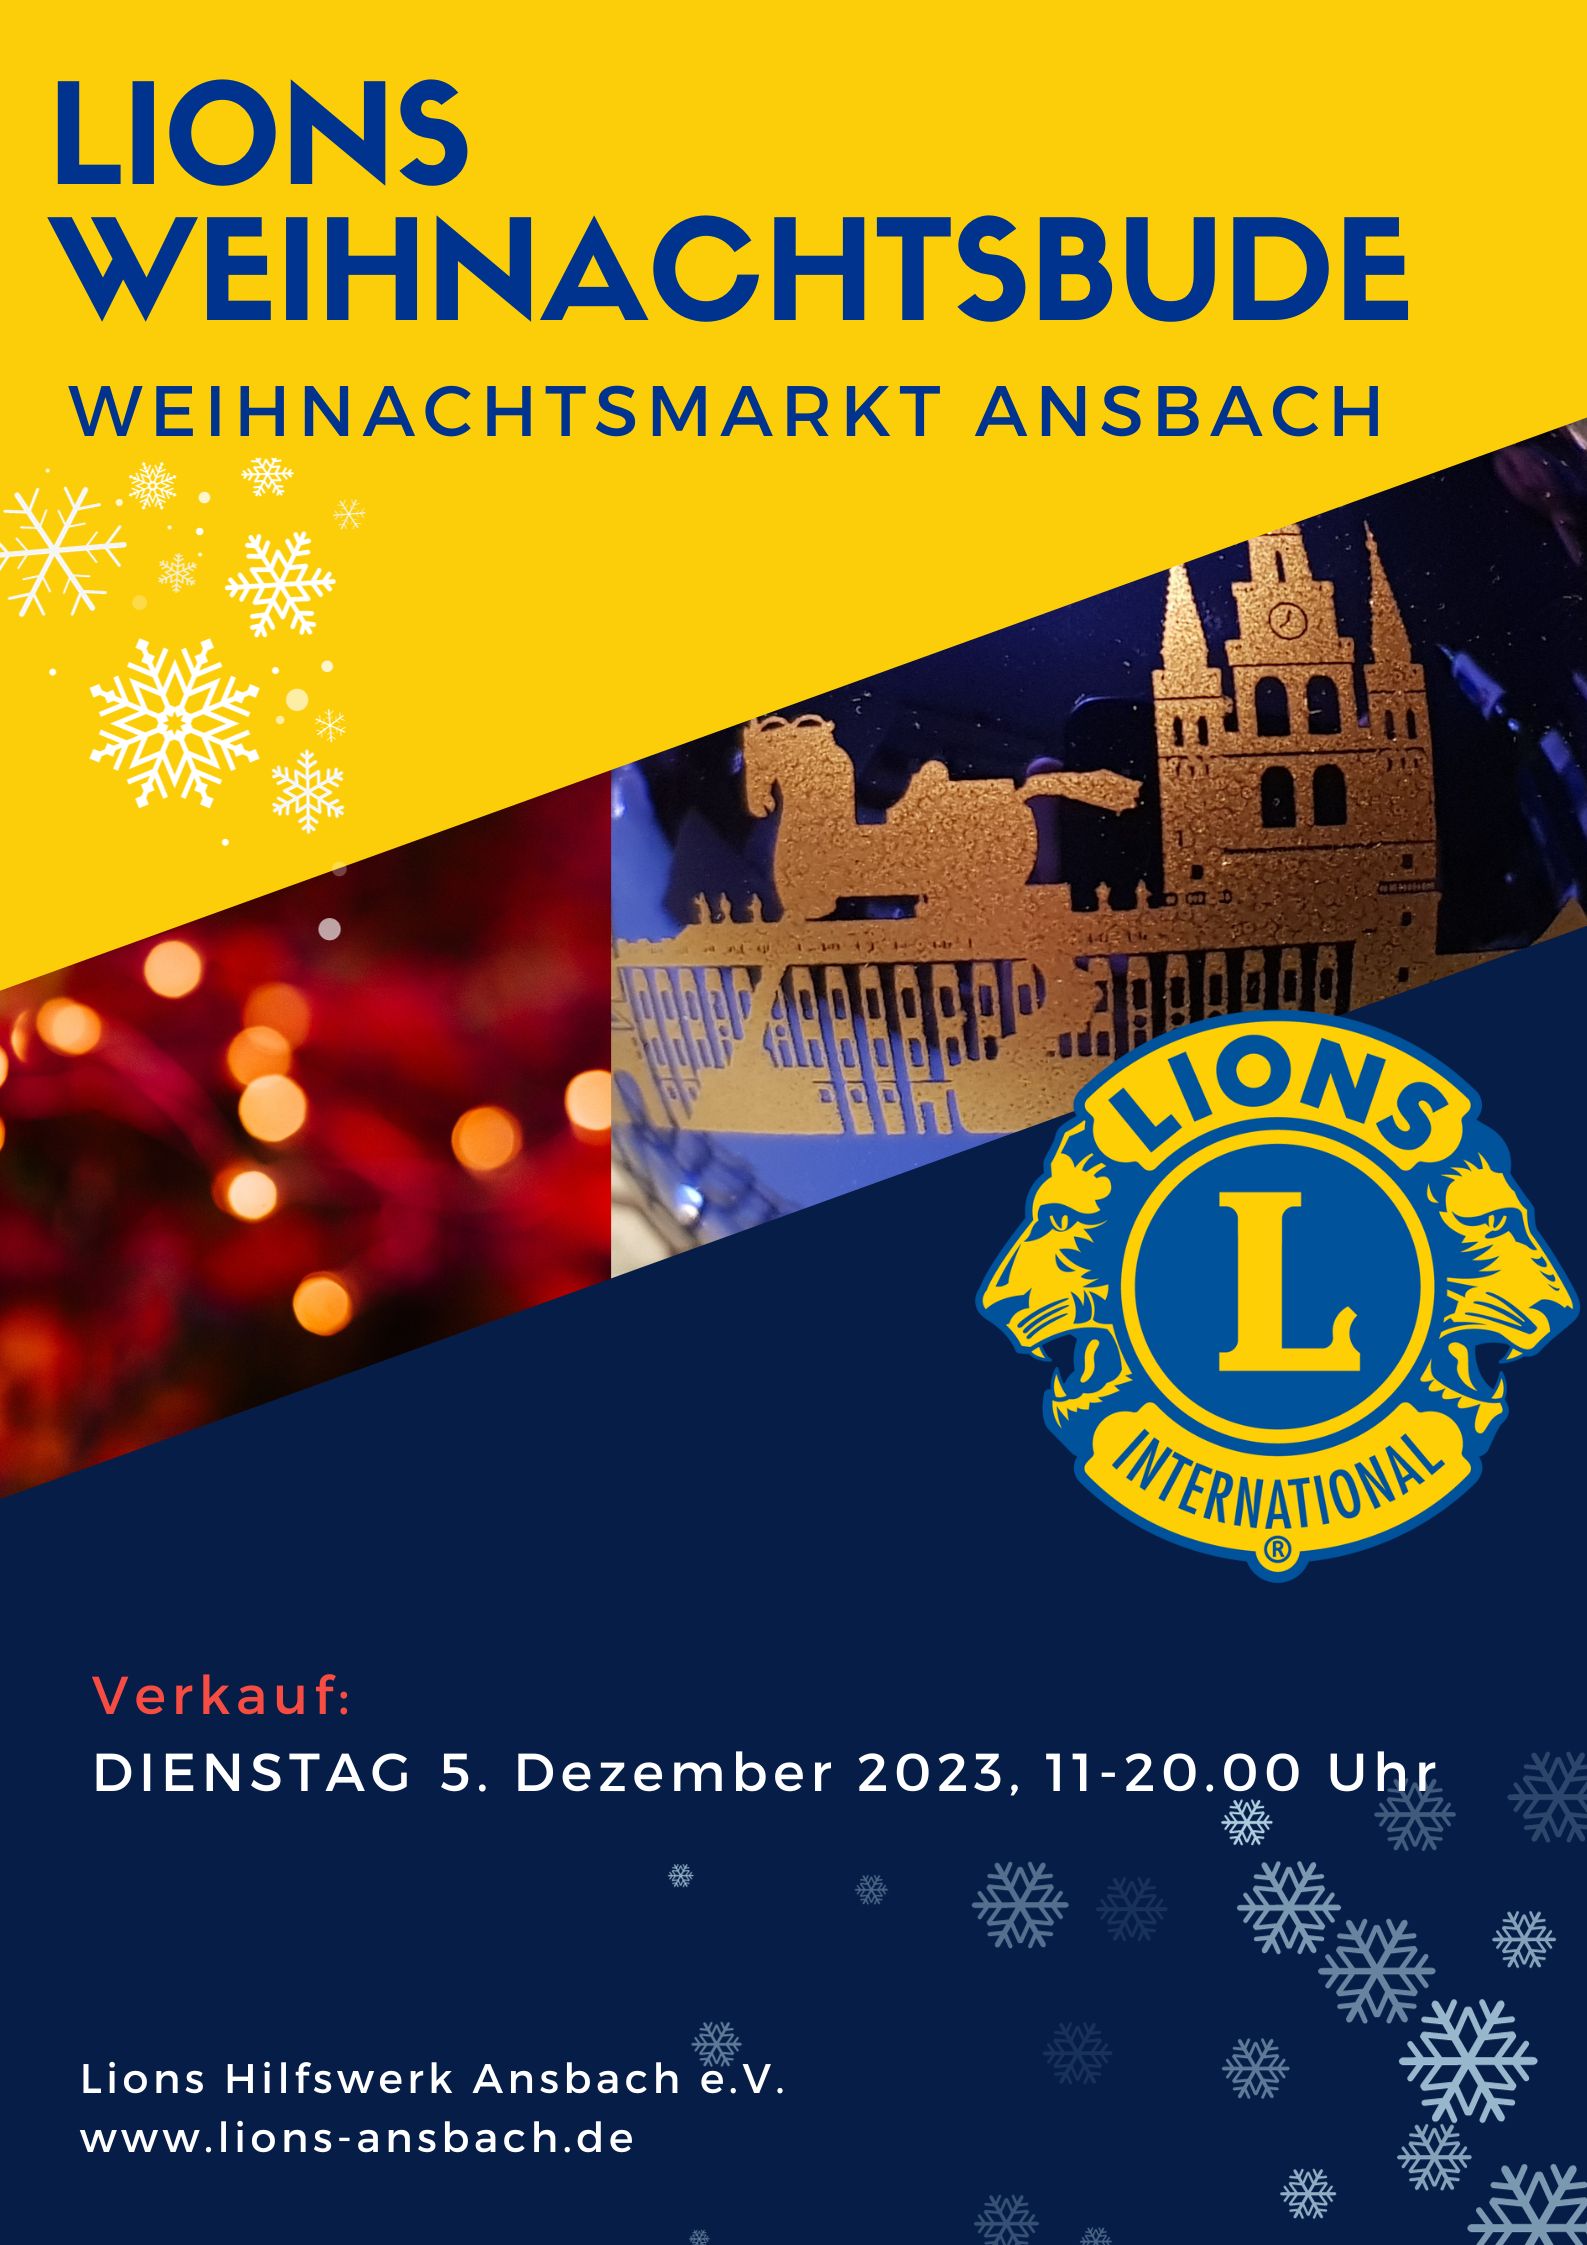 Lions Weihnachtsbude auf dem Ansbacher Weihnachtsmarkt am 5. Dezember 2023